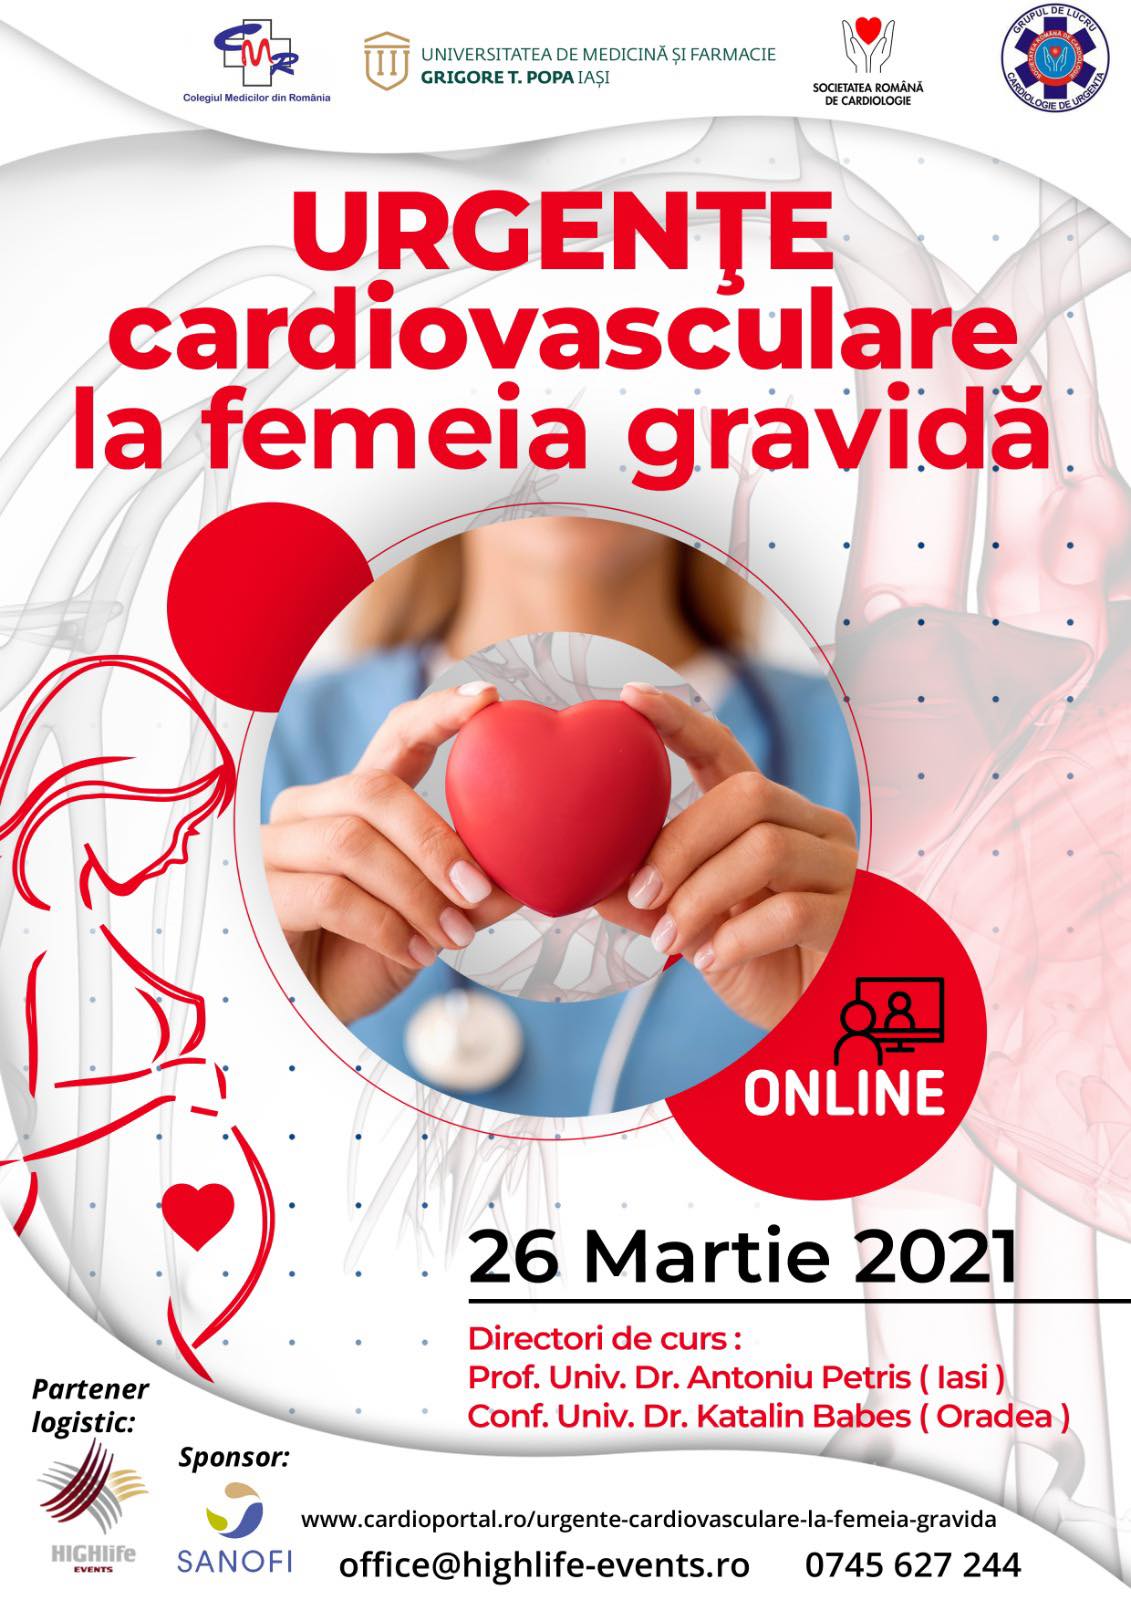 Refusal mini Discourse Urgente cardiovasculare la femeia gravida | Cardioportal